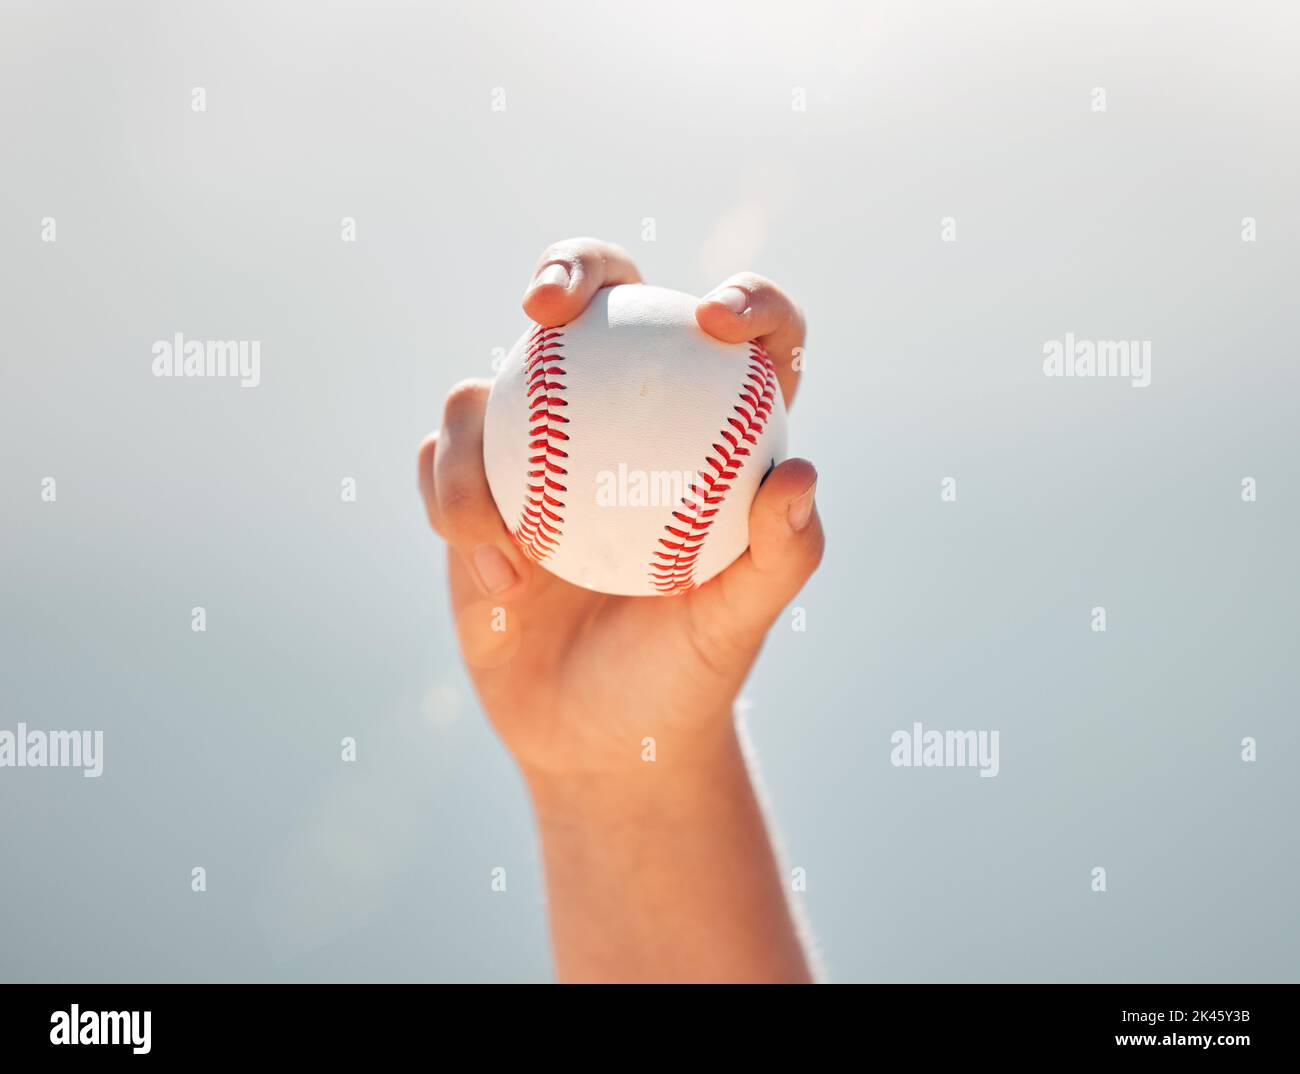 Baseballspiele, Sporthände und Ballsportarten, während der Pitcher vor einem klaren blauen Himmel gehalten wird. Übung, Spiel und Softball mit einem professionellen Spieler Stockfoto